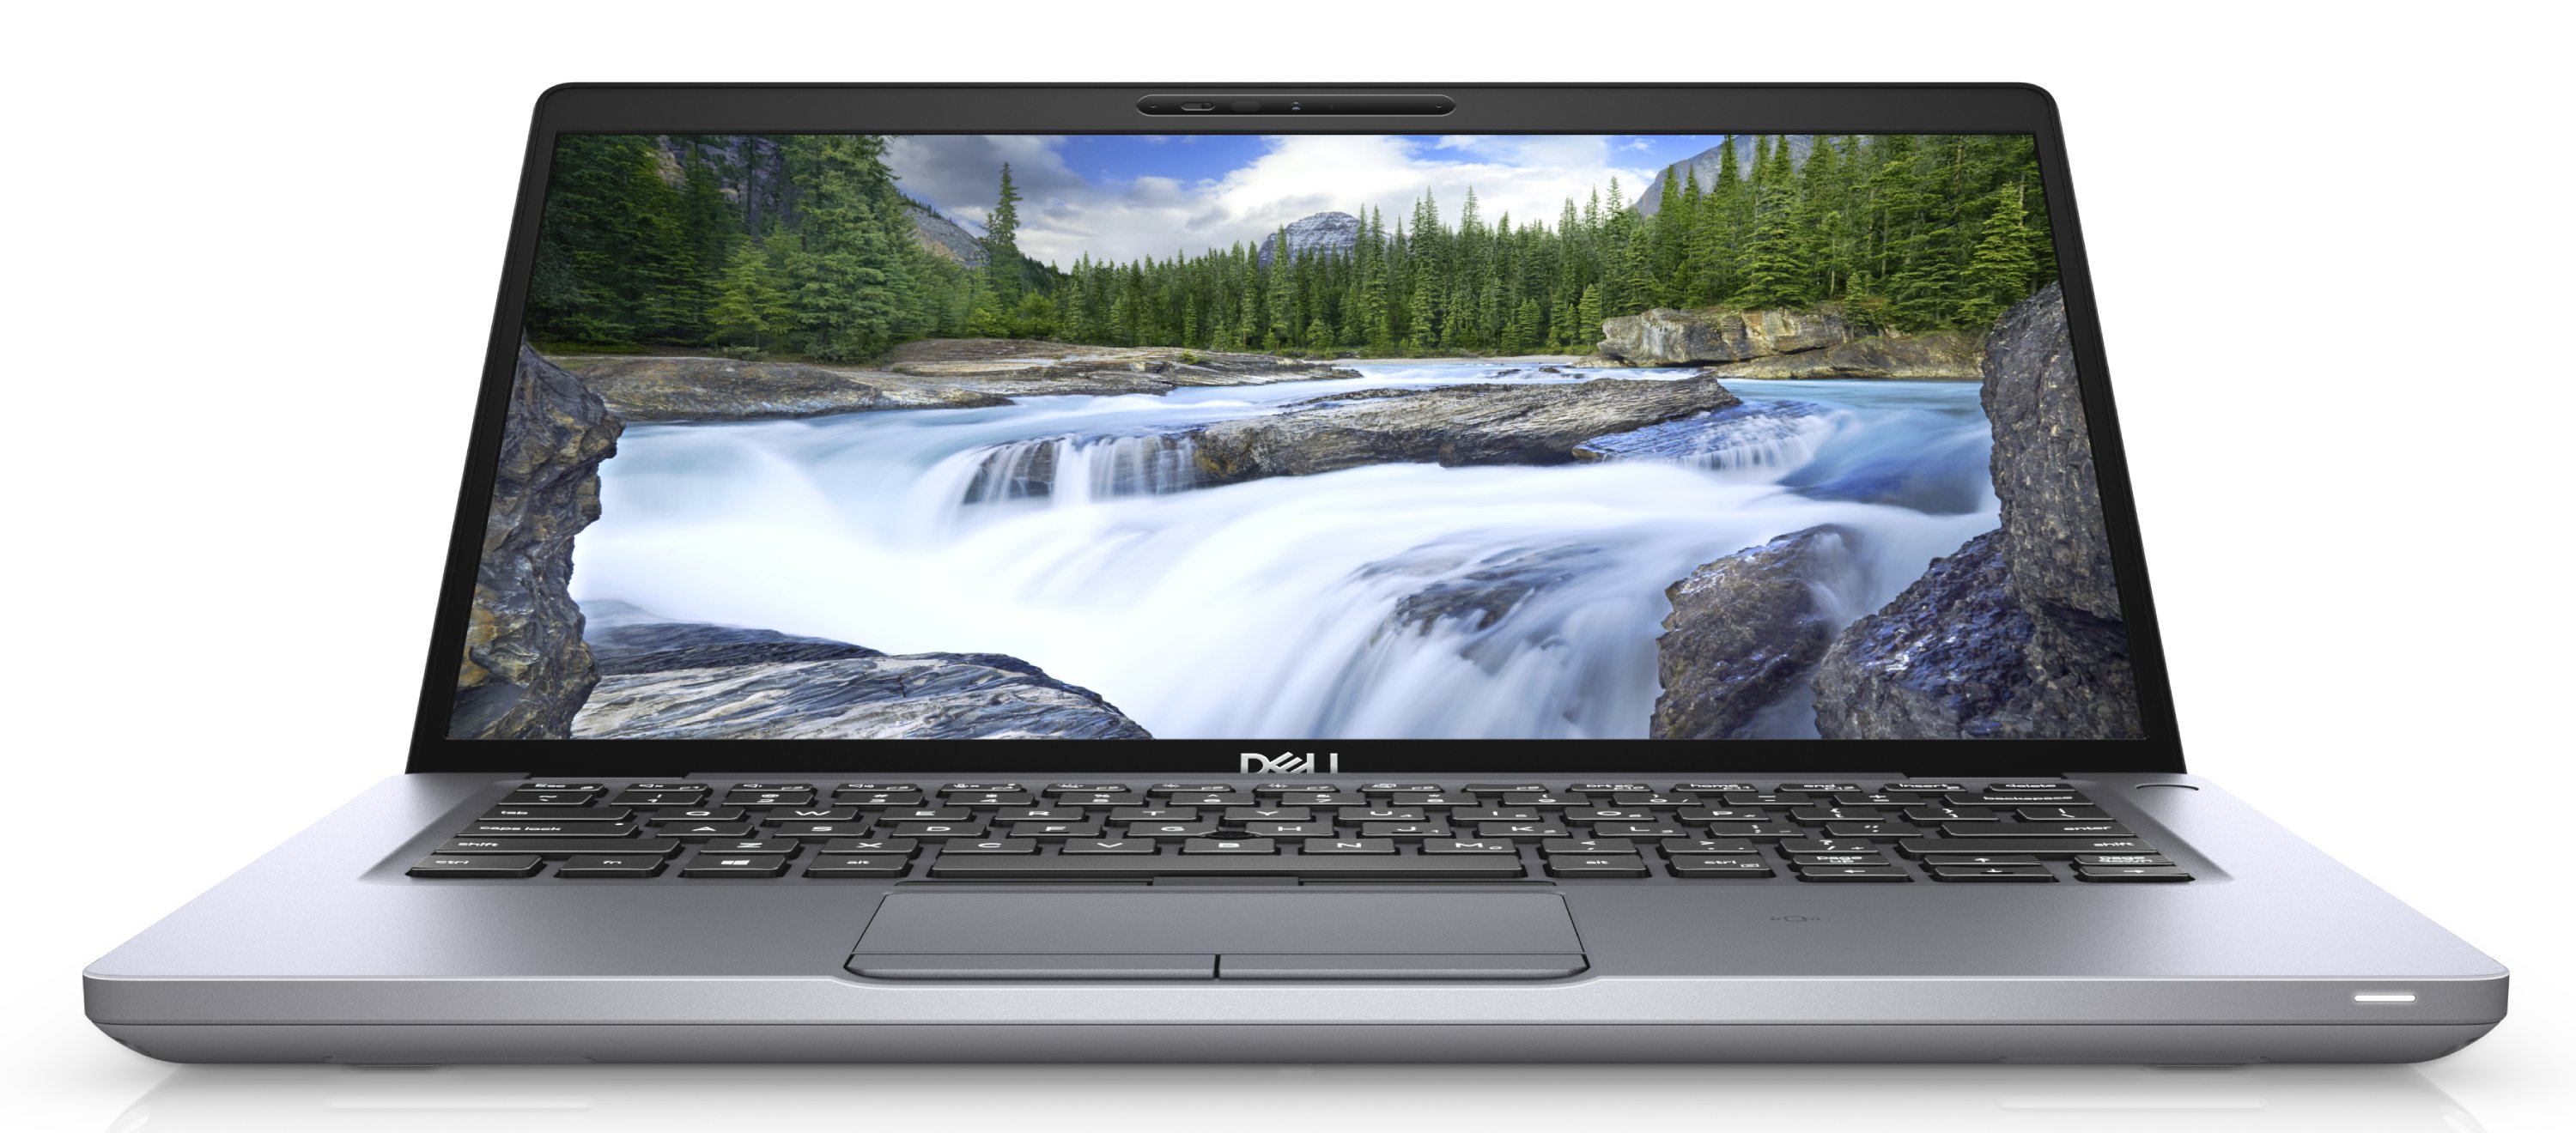 Ноутбук Dell Latitude 5410 Core i5-10210U (1,6GHz) 14,0" FullHD WVA Antiglare 8GB (1x8GB) DDR4 256GB SSD Intel UHD 620 TPM 4 cell (68Whr) W10 Pro 3y NBD gray-39136